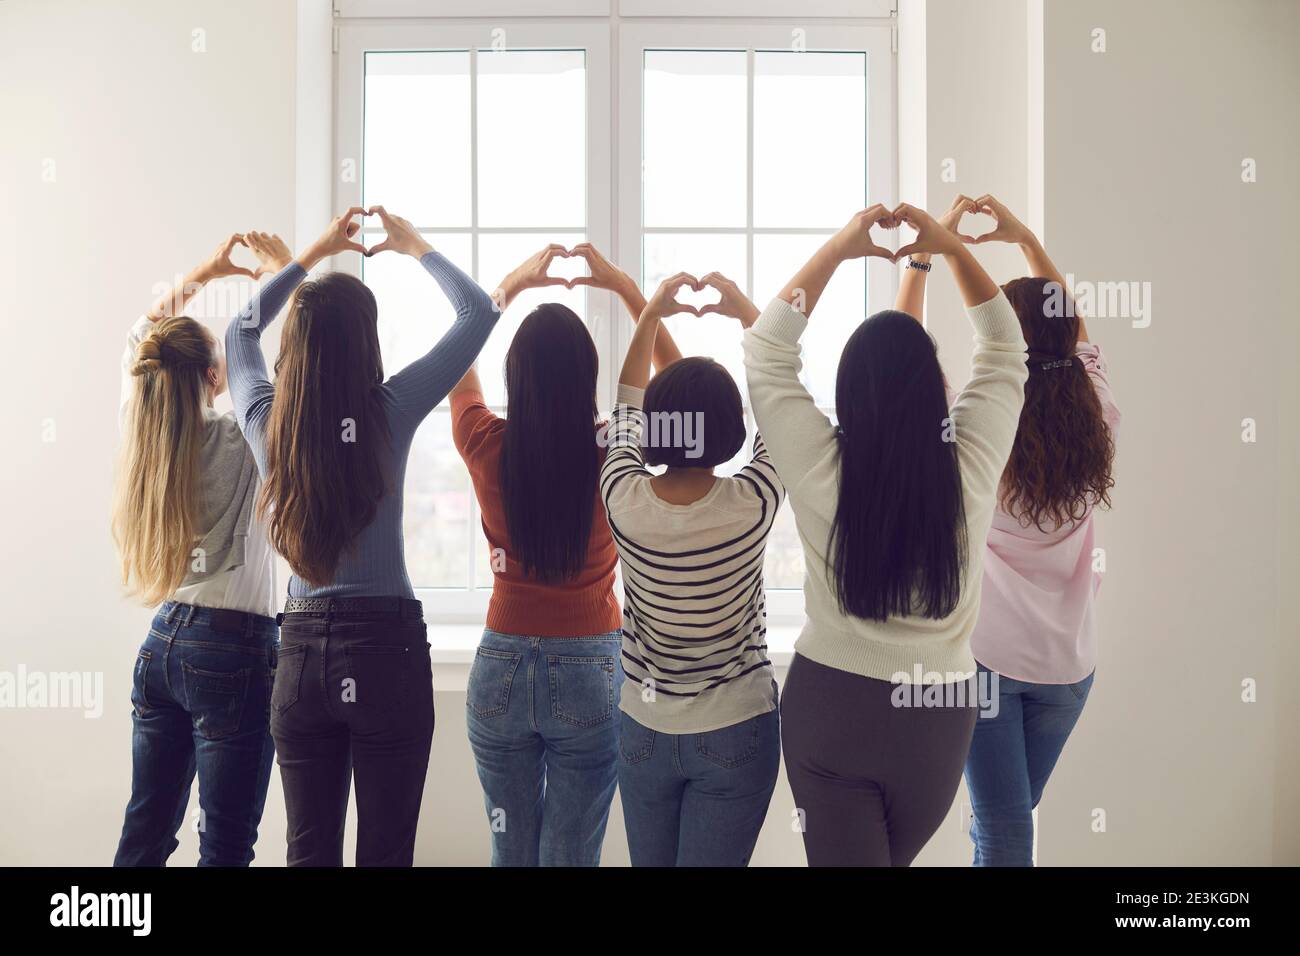 Gruppe von Frauen stehen zusammen und tun herzförmige Geste Mit ihren Händen Stockfoto